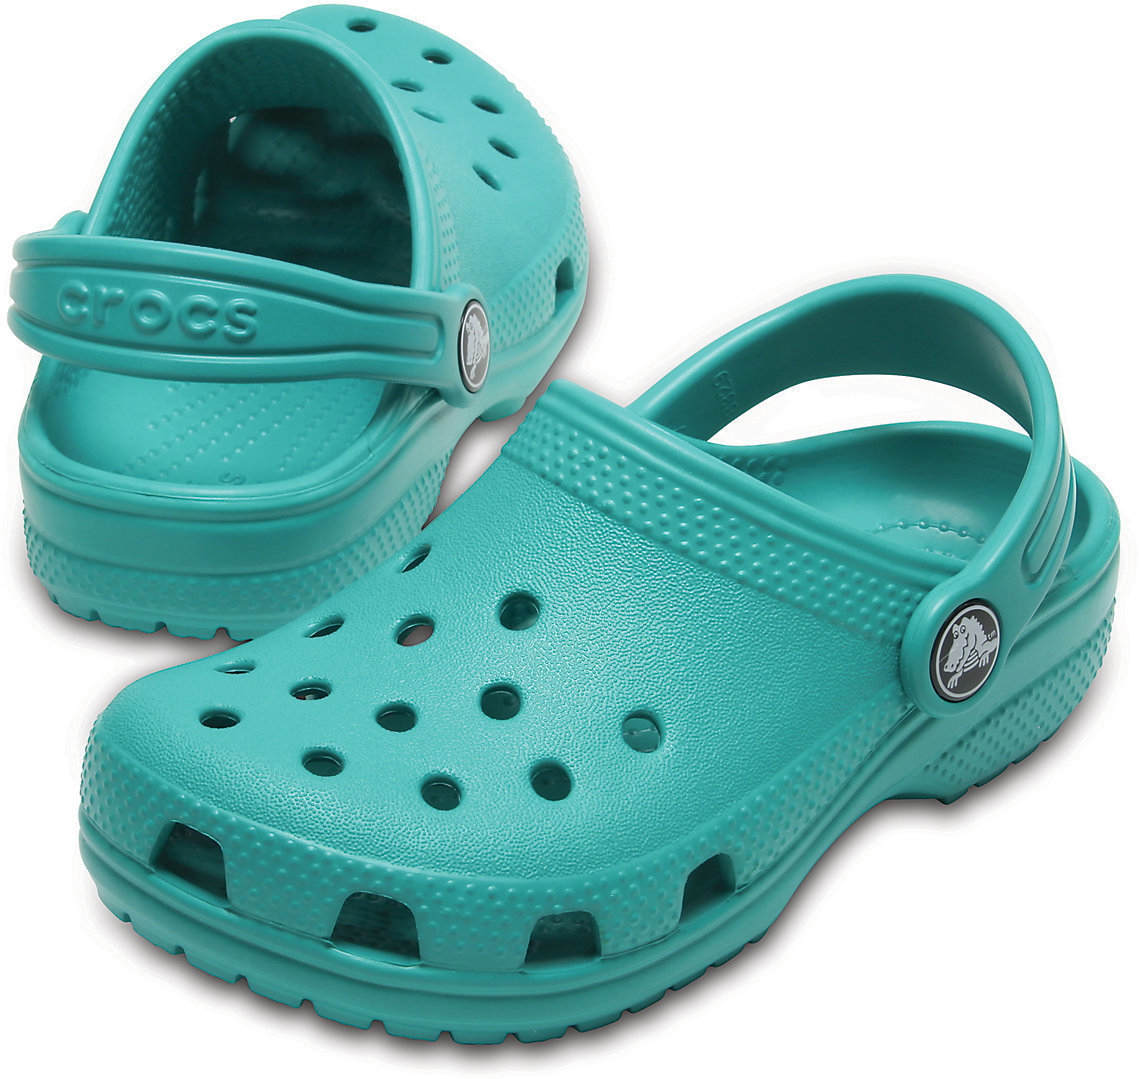 Buty żeglarskie dla dzieci Crocs Kids' Classic Clog Tropical Teal 25-26